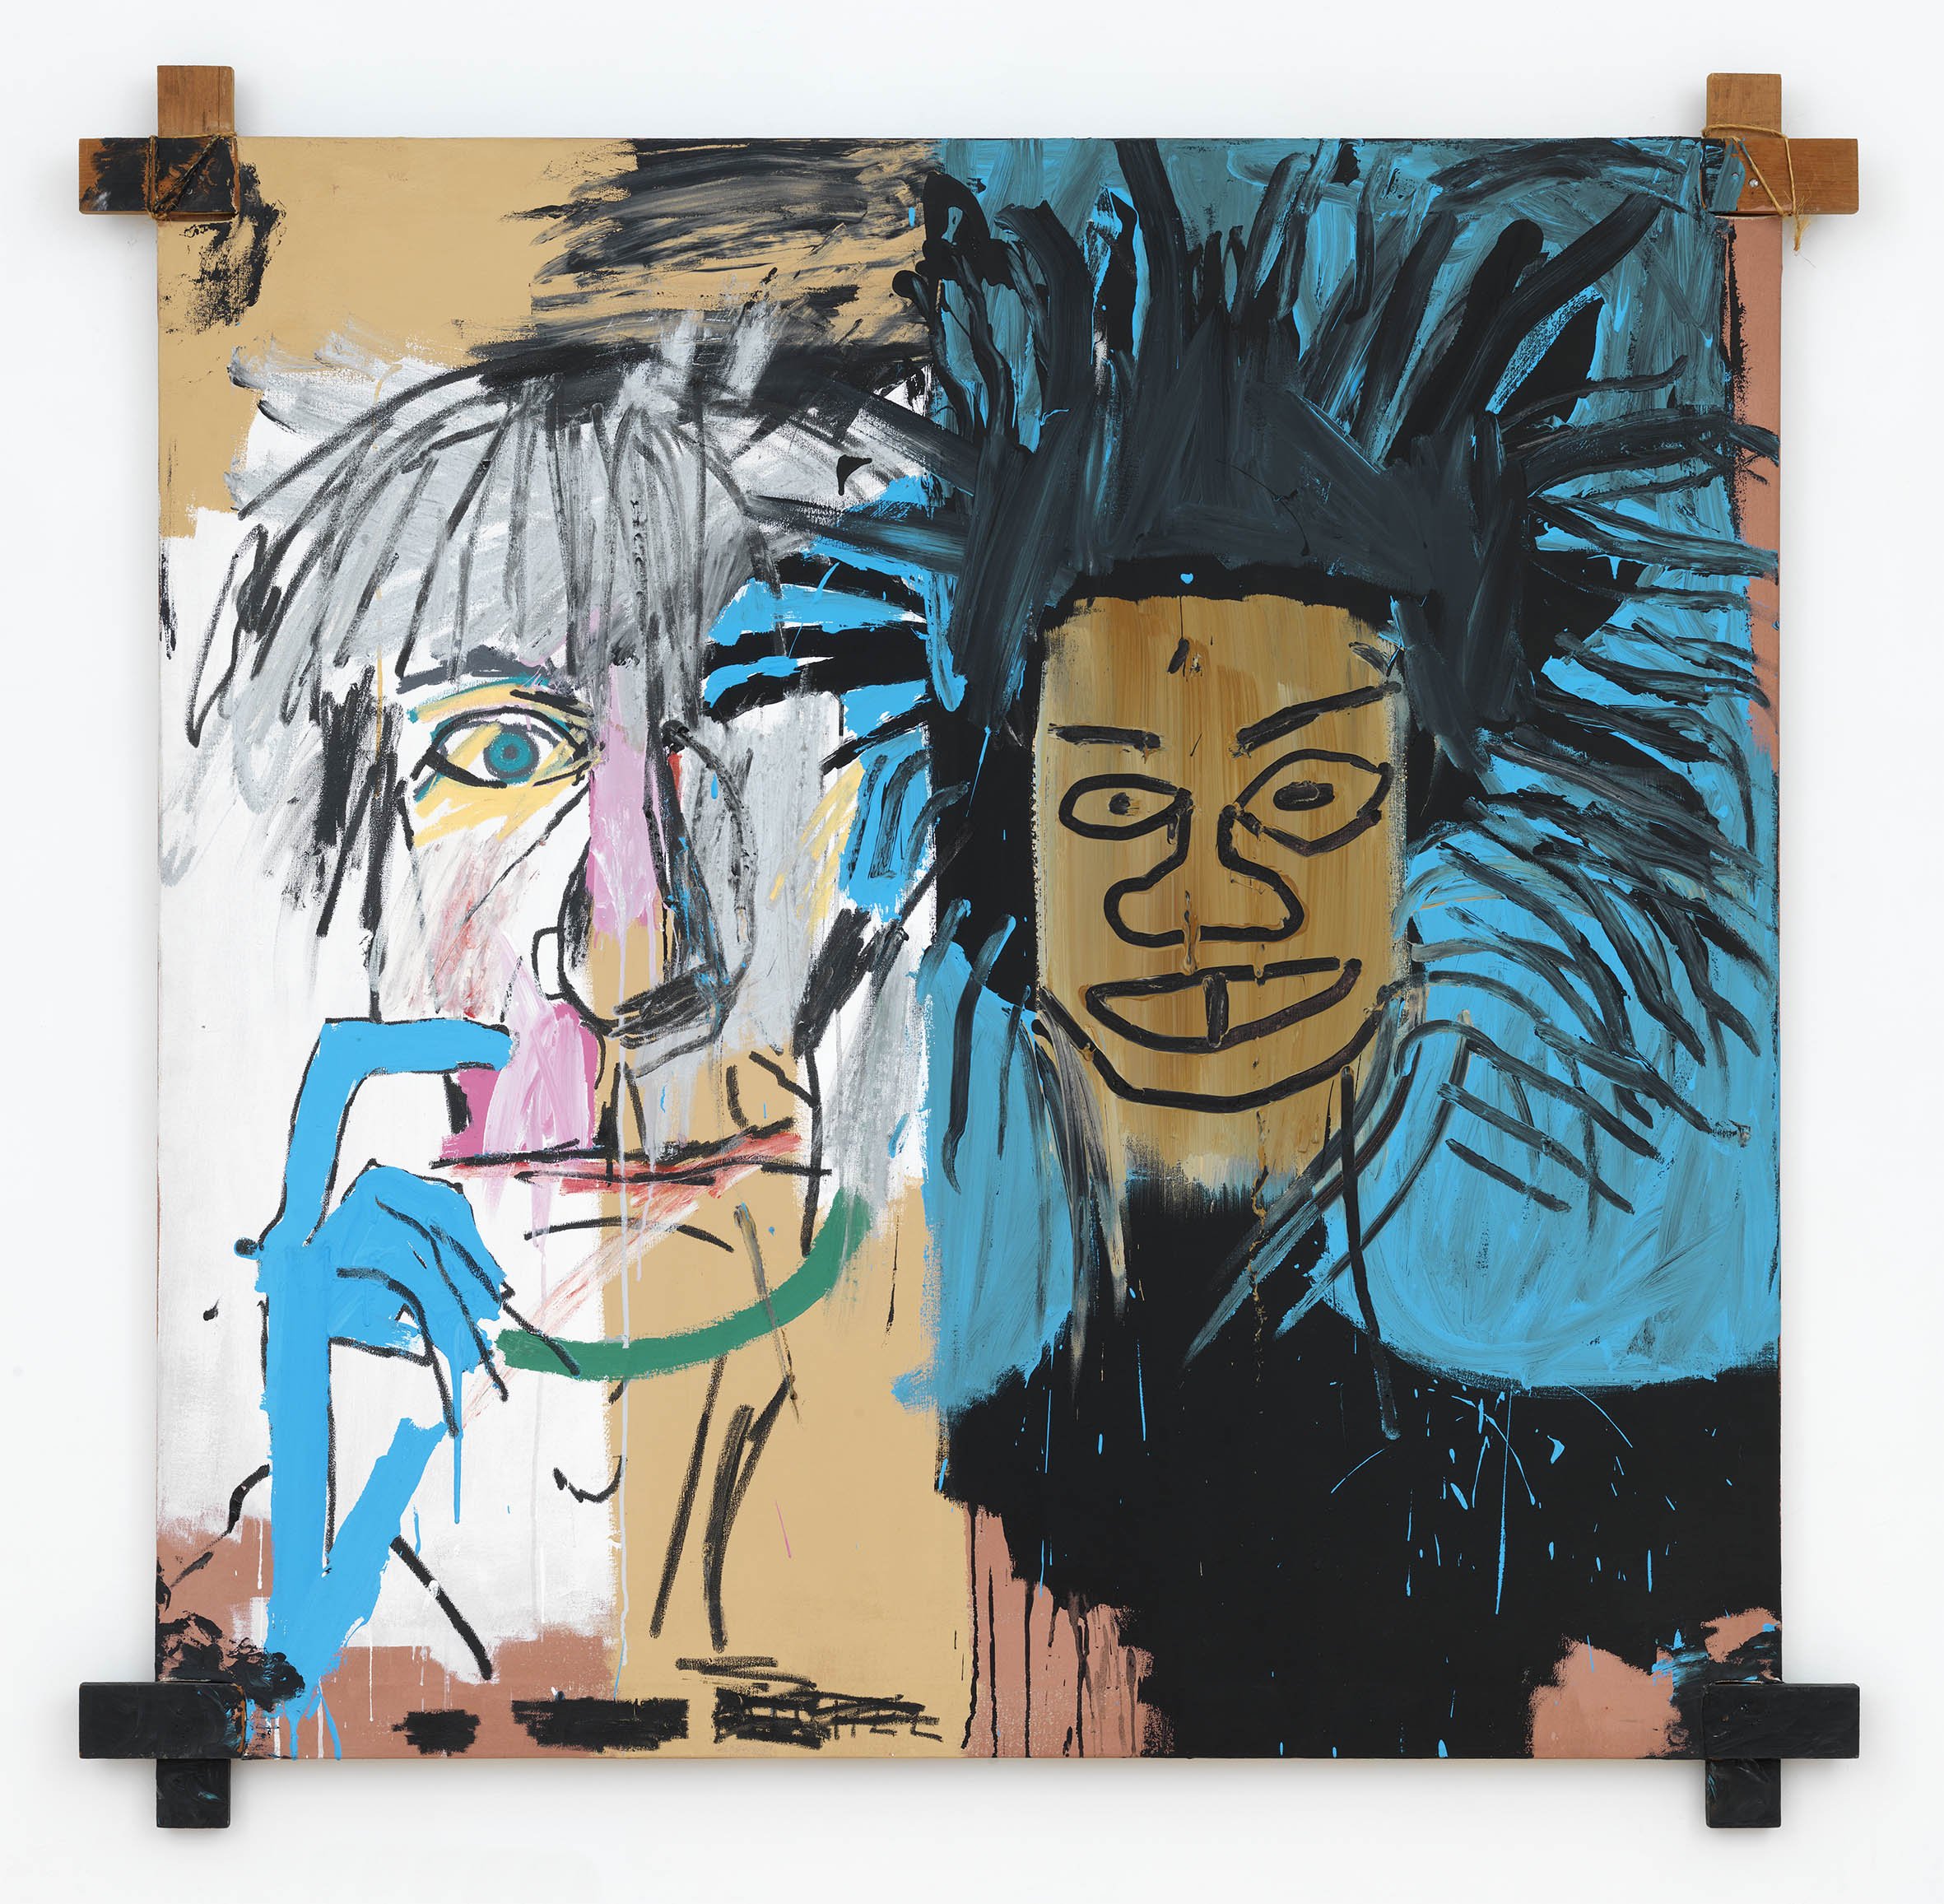 Fondation Louis Vuitton's Art Exhibitions on Schiele and Basquiat's  Masterpieces